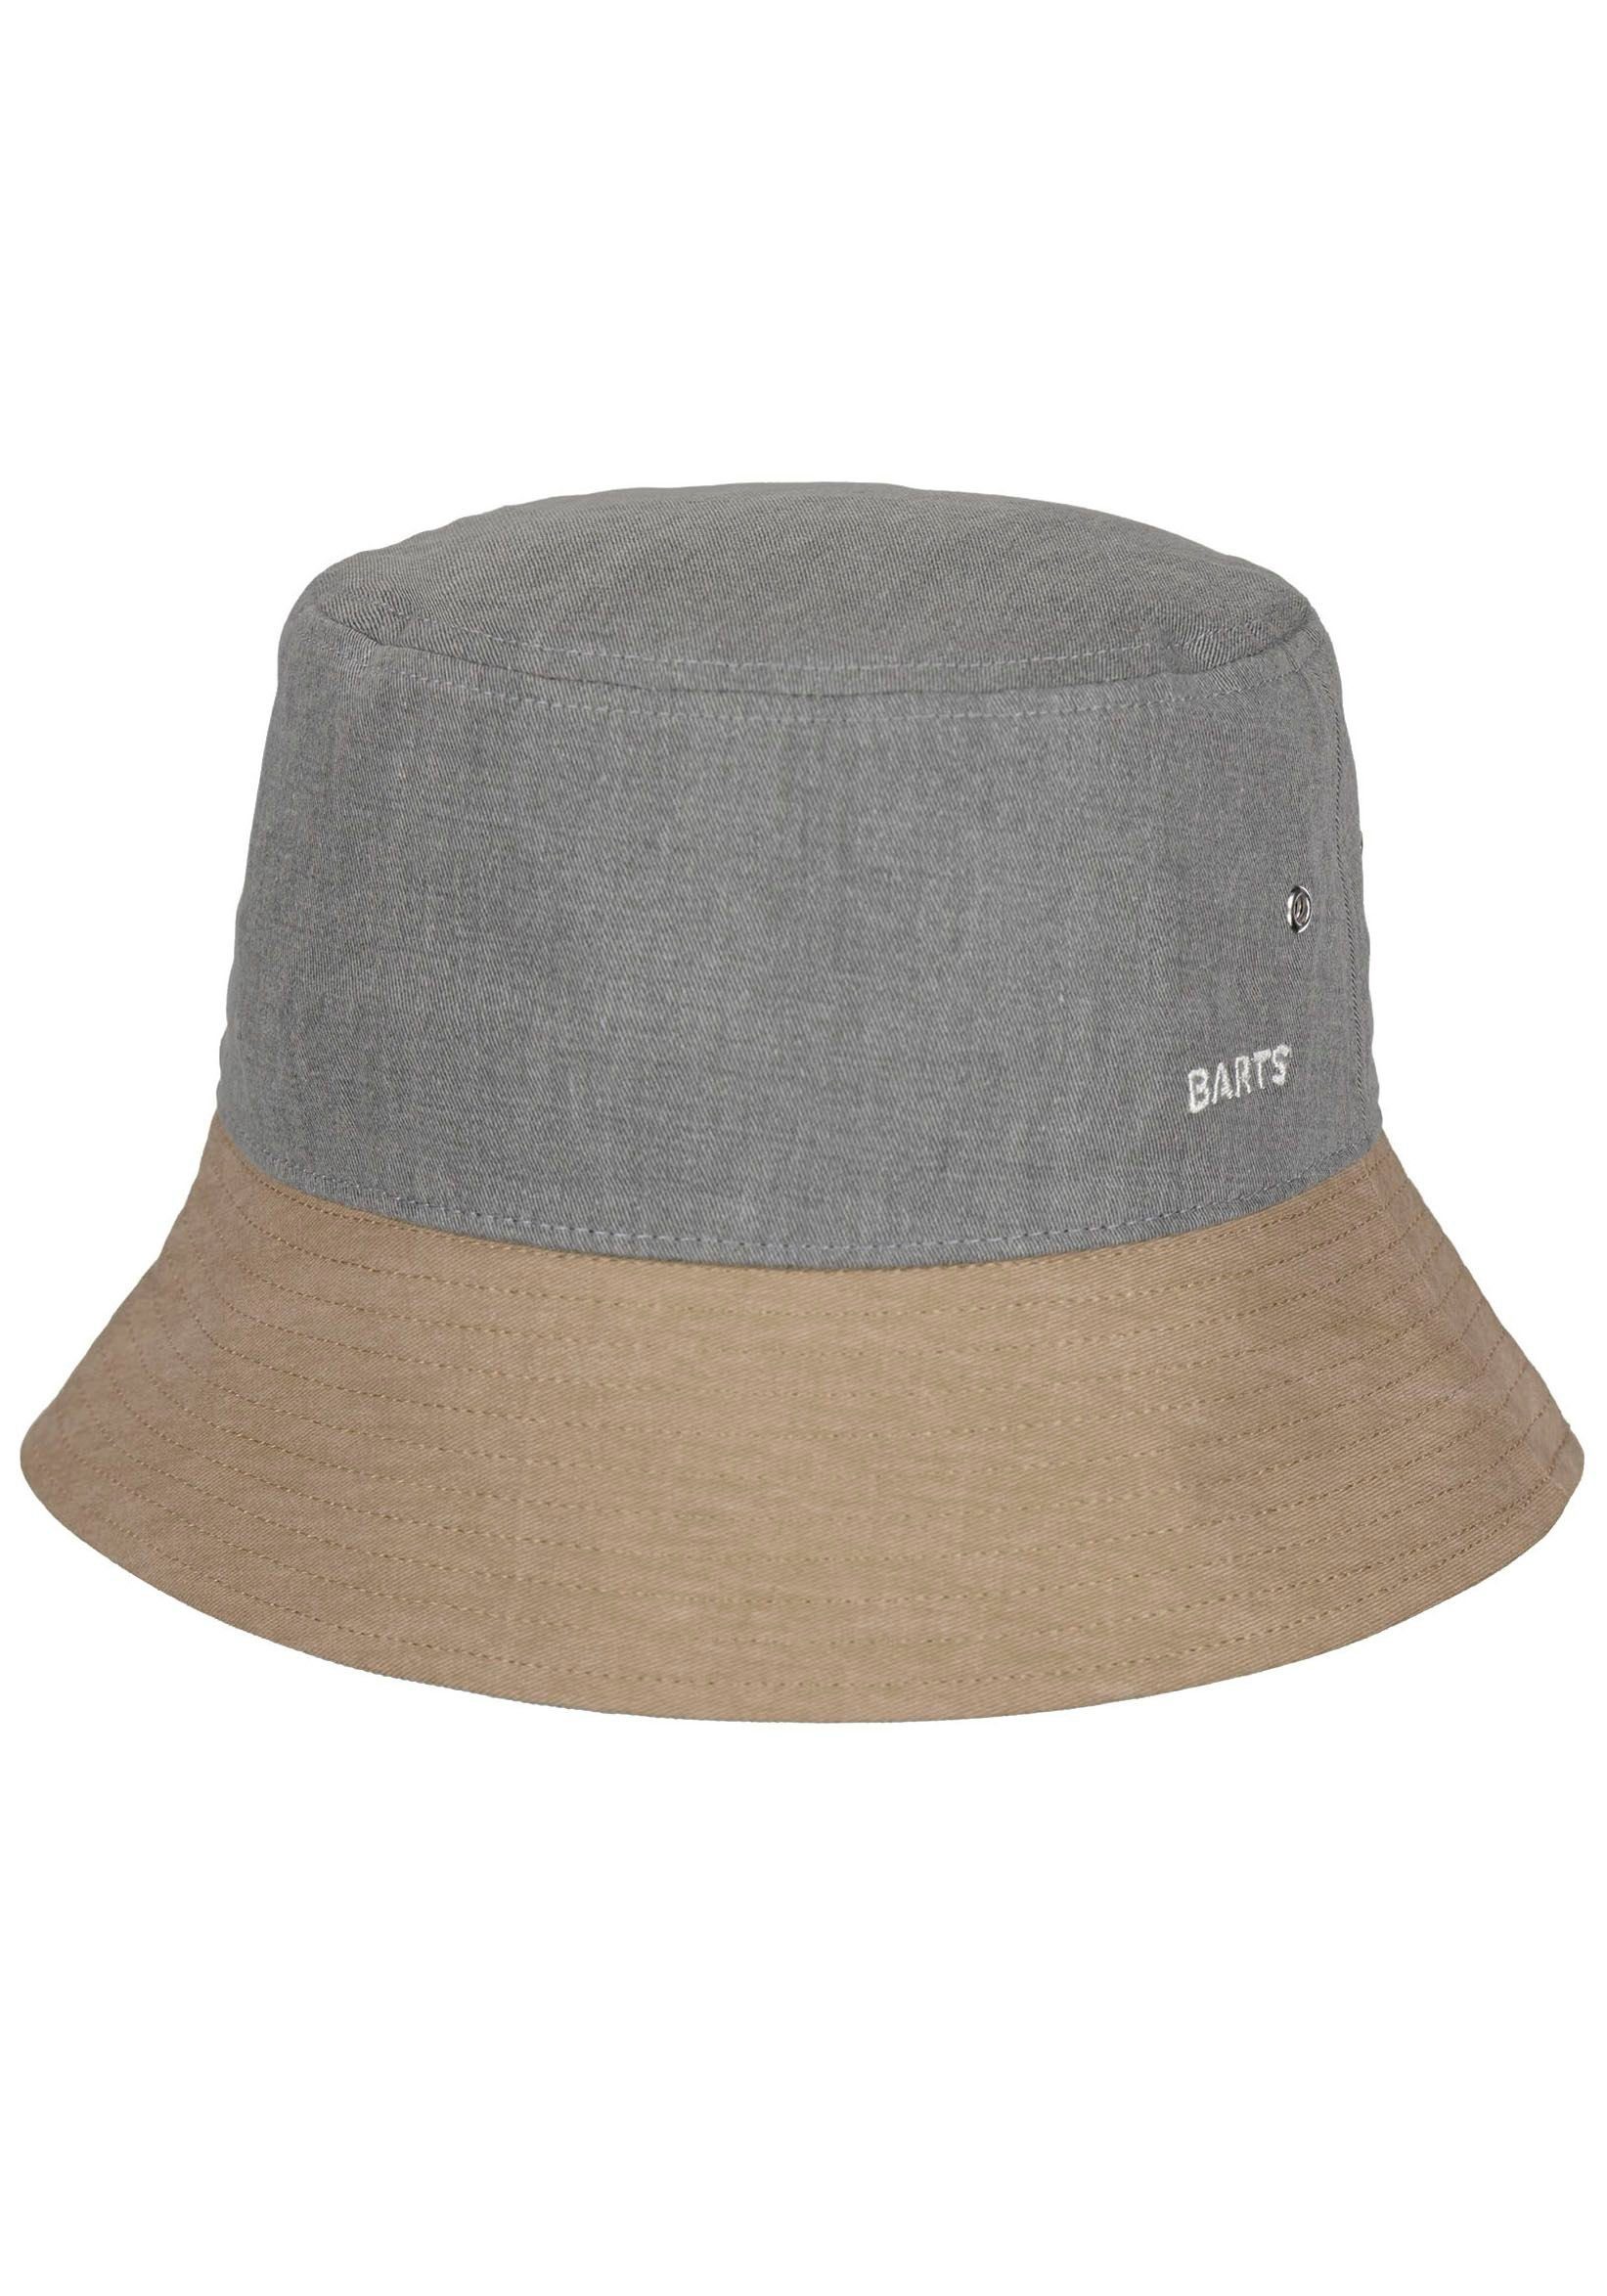 Barts Fischerhut Yarrow mit Luftösen grau-beige Hat